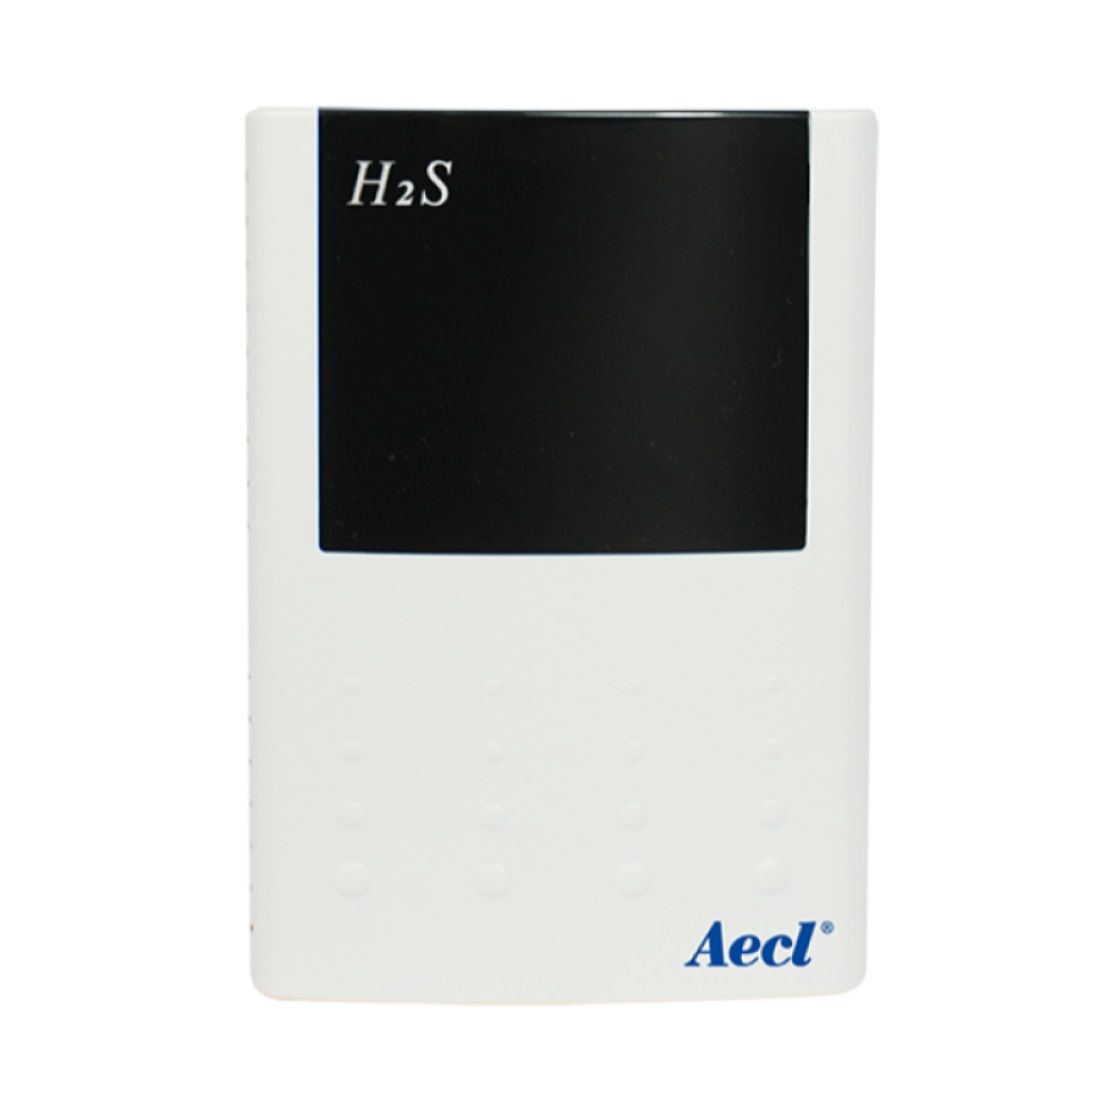 H2S環境監視のためのワイヤレスセンシングソリューション。